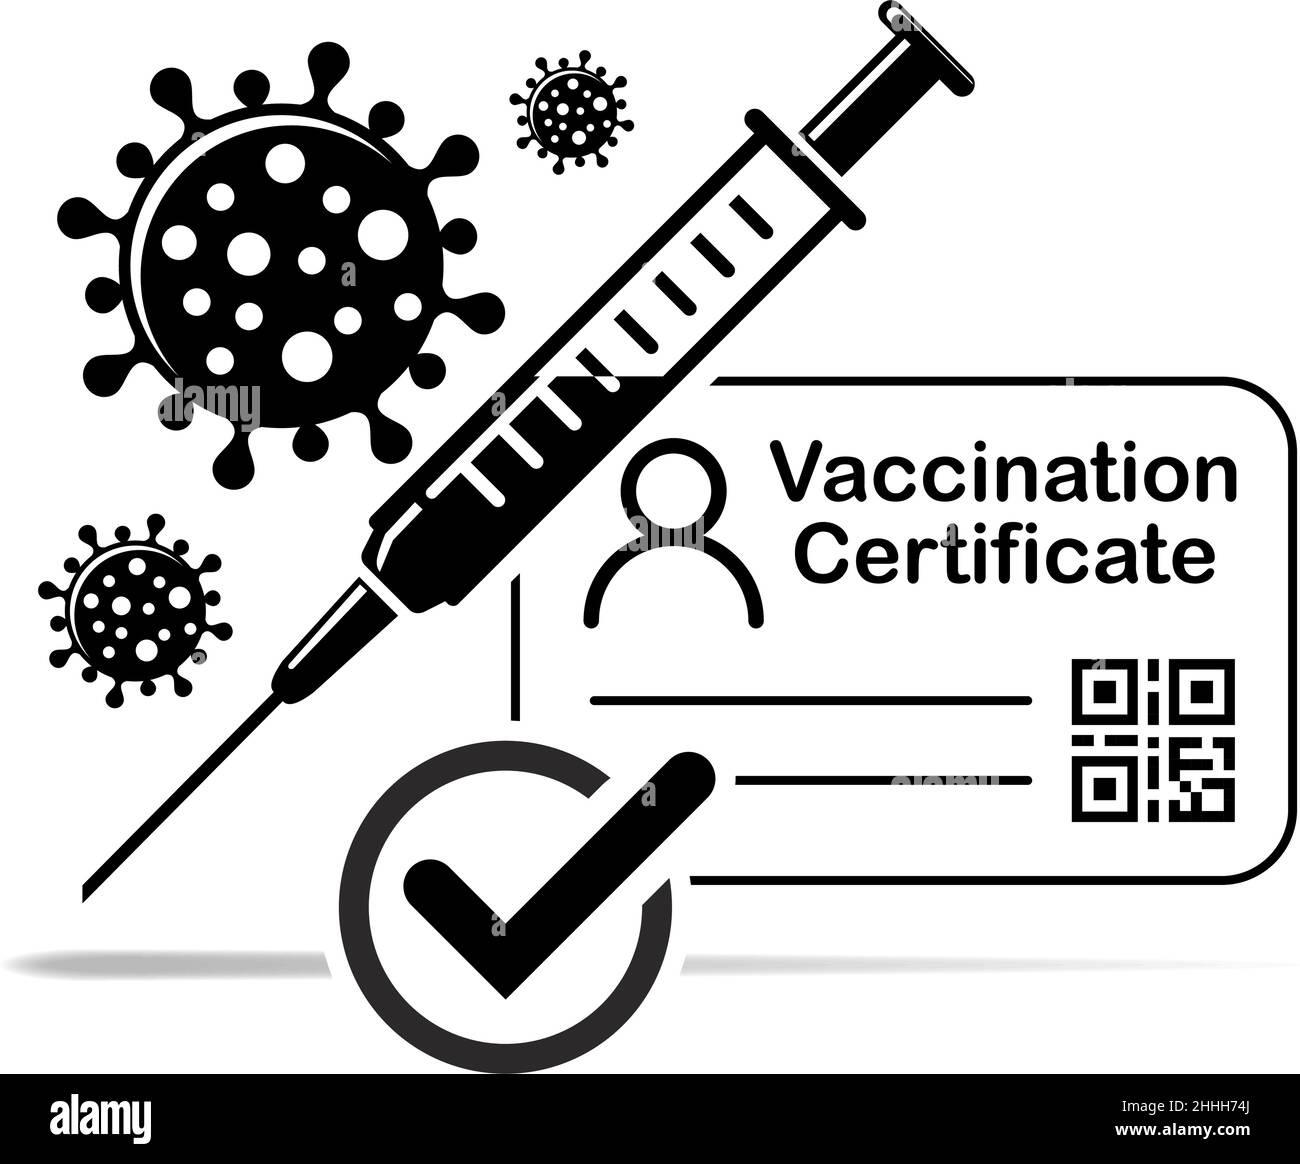 COVID-19 icône de passeport de vaccin.Certificat de vaccination contre le coronavirus avec une coche, une carte médicale ou un passeport pour voyager dans le temps en cas de pandémie.VEC Illustration de Vecteur